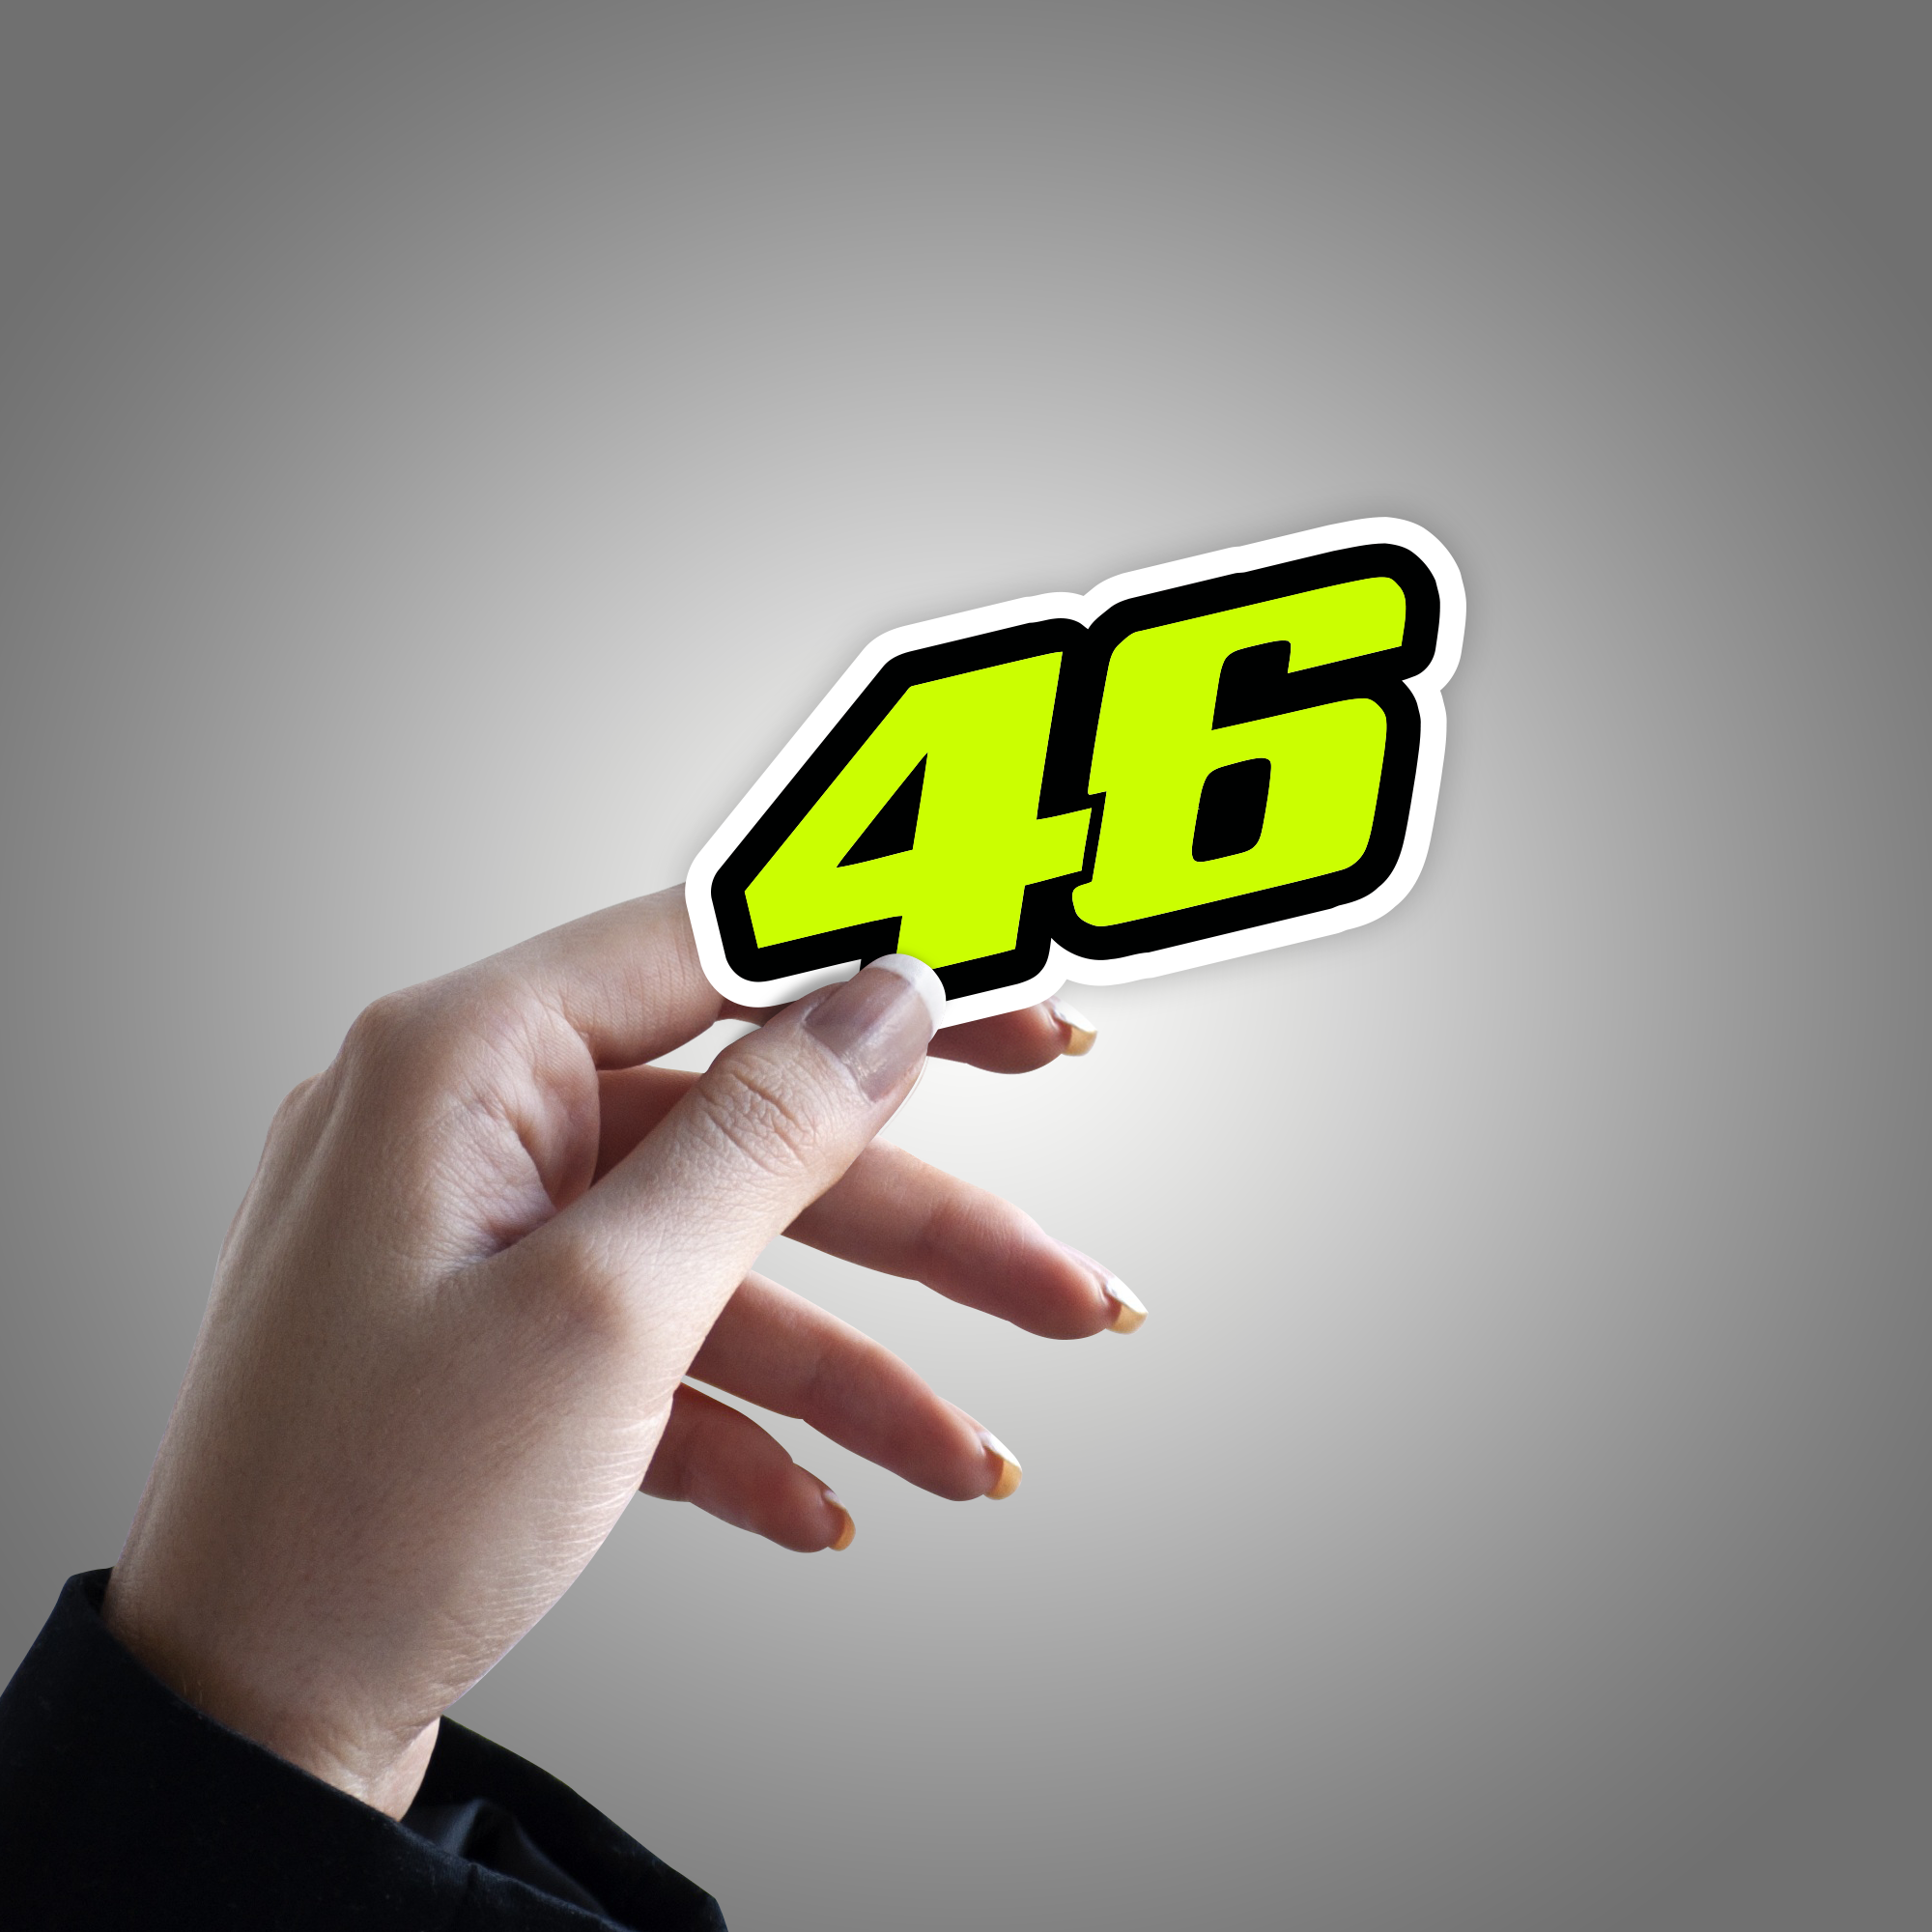 Valentino Rossi 46 Stickers for Sale